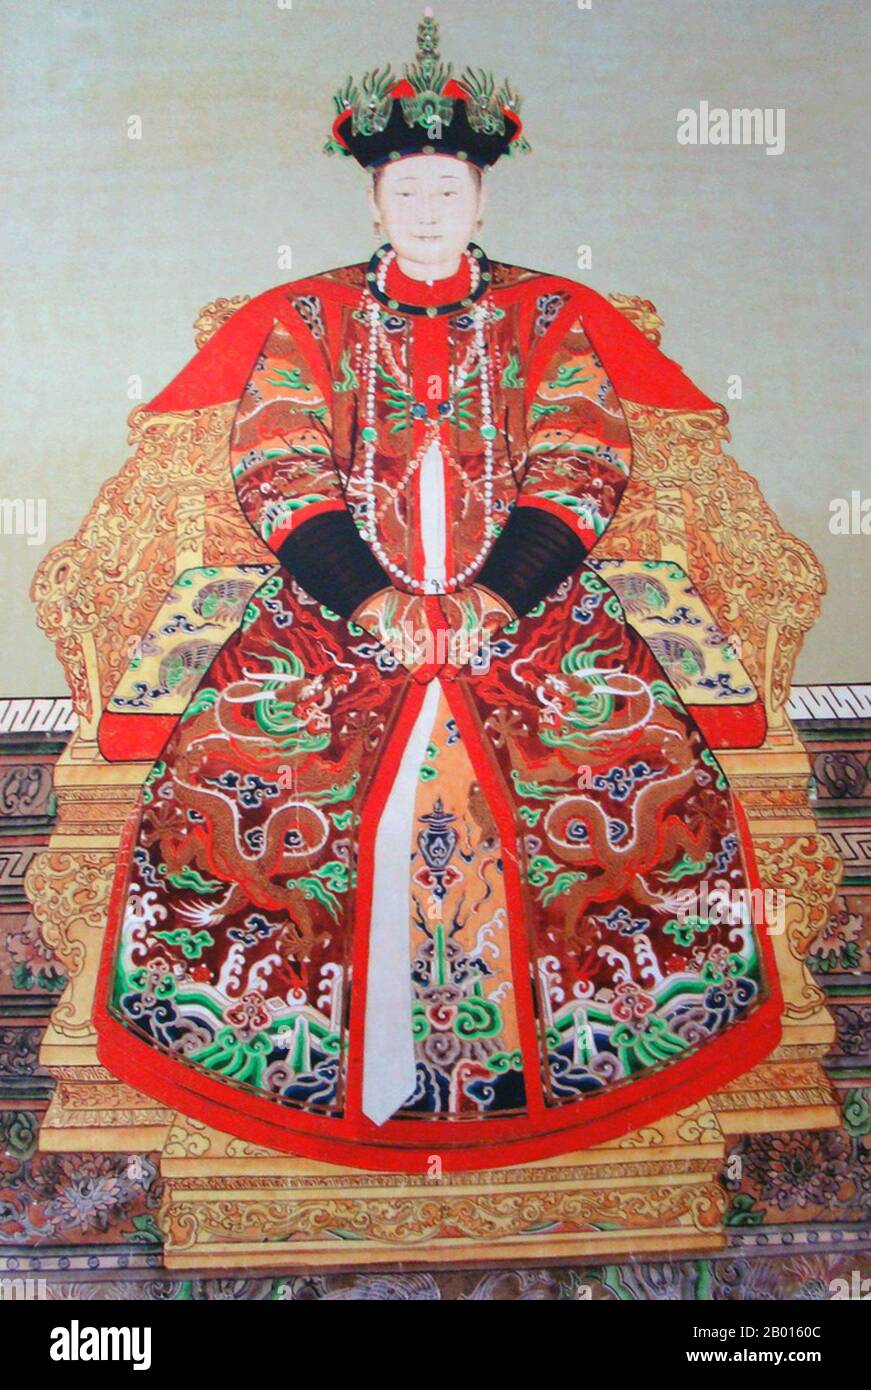 Cina: Imperatrice Xiao Hui Zhang (5 novembre 1641 - 7 gennaio 1718) secondo consorte dell'imperatore Shunzhi. Rotolo appeso pittura, fine 17 ° secolo. L'imperatrice Xiaohuizhang, nato Alatan Qiqige, era originariamente del clan Khorchin Mongol Borjigit. Quando la prima imperatrice di Shunzhi fu sradicata nel 1653, Xiaohuizhang fu promossa a Consort. Un anno dopo divenne ufficialmente il secondo imperatrice di Shunzhi. Quando l'imperatore Kangxi salì sul trono, fu onorata come imperatrice di Dowager Renxian, anche se non era la madre biologica del nuovo imperatore. Foto Stock